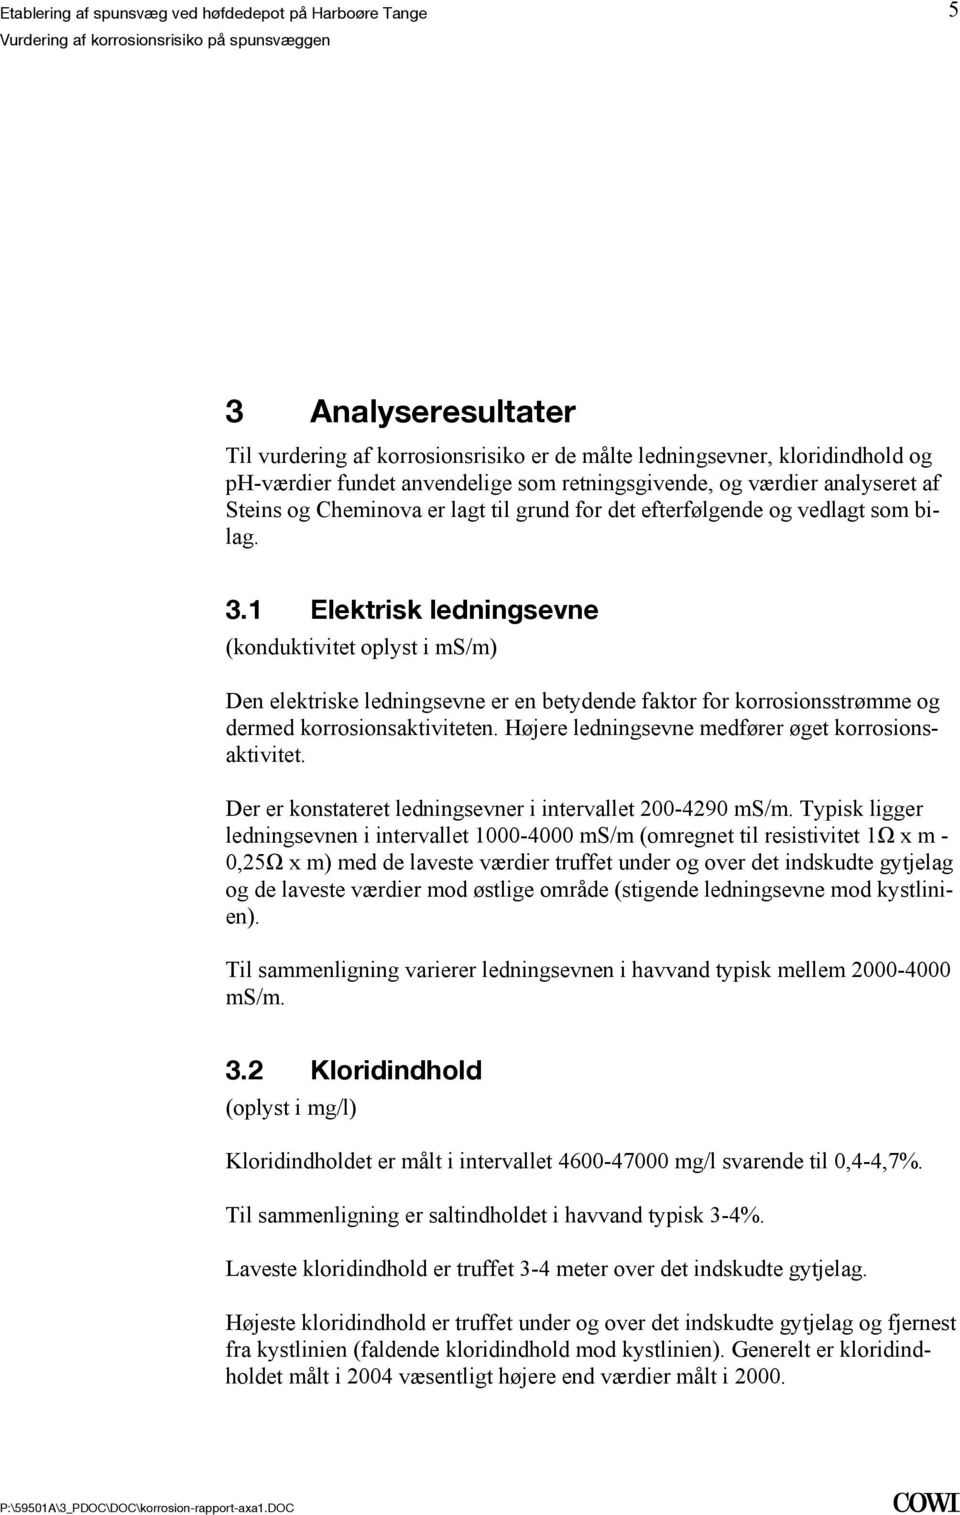 Etablering af spunsvæg ved høfdedepot på Harboøre Tange - PDF Free Download